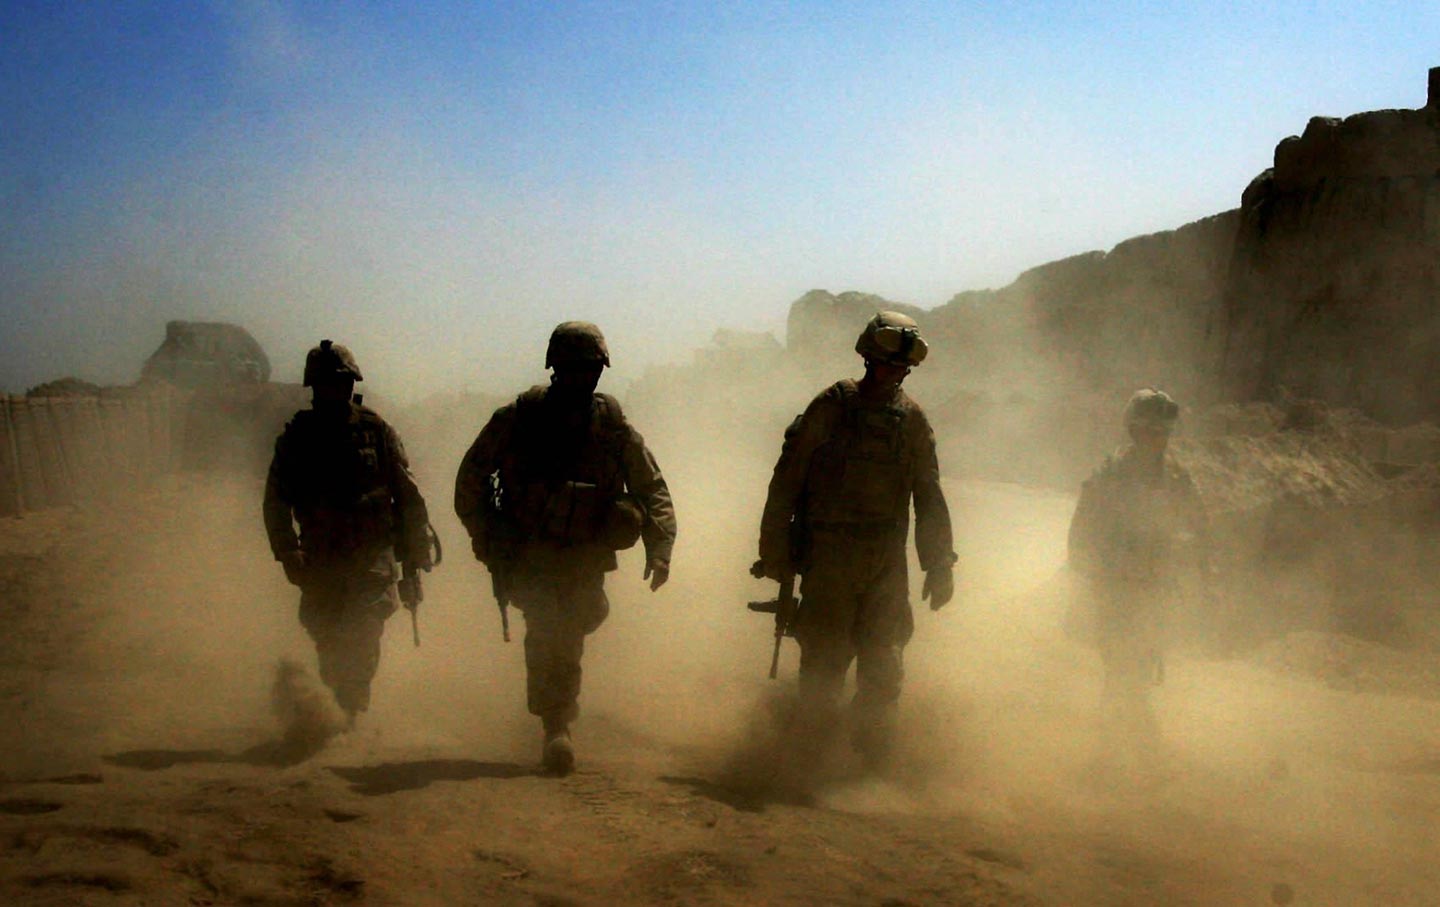 American troops on patrol in Afghanistan